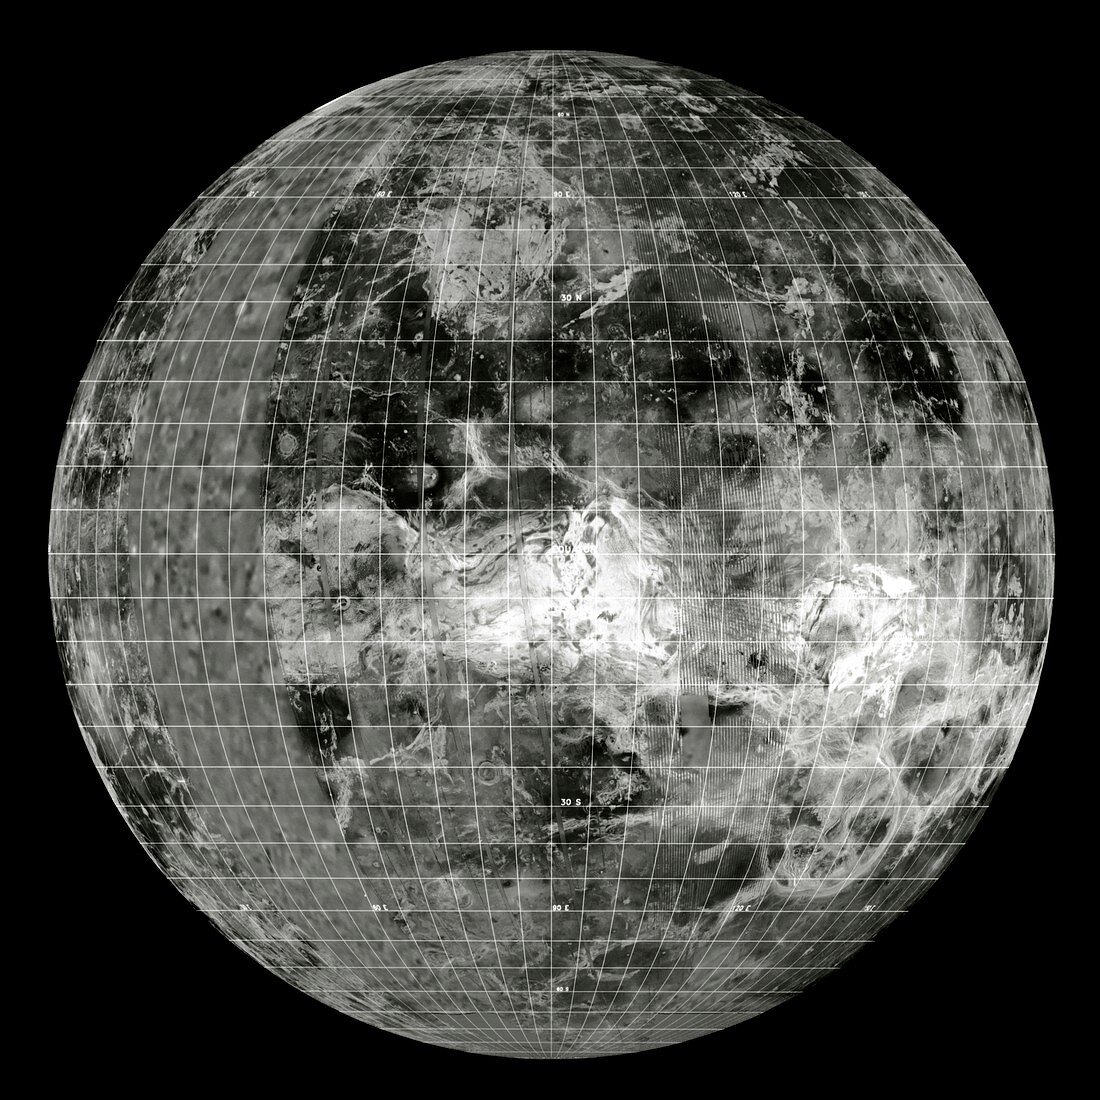 Magellan mosaic of Venus east hemisphere with grid